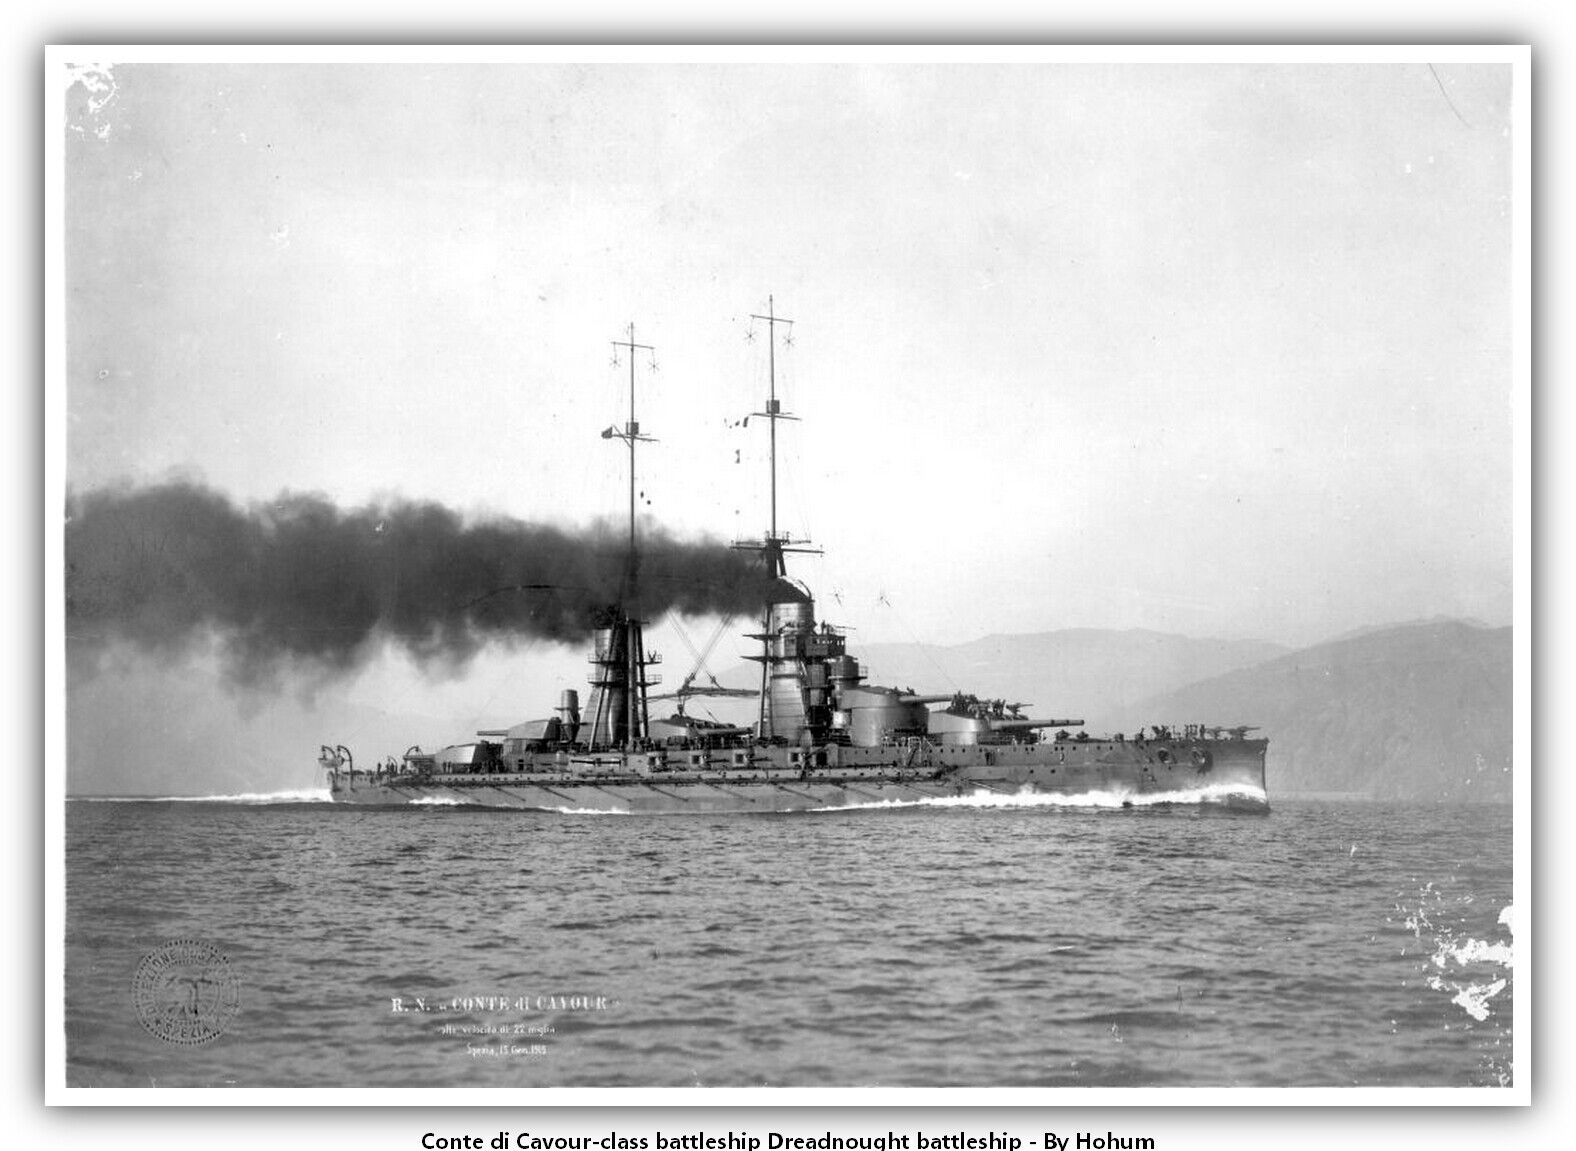 Conte di Cavour-class battleship Dreadnought battleship